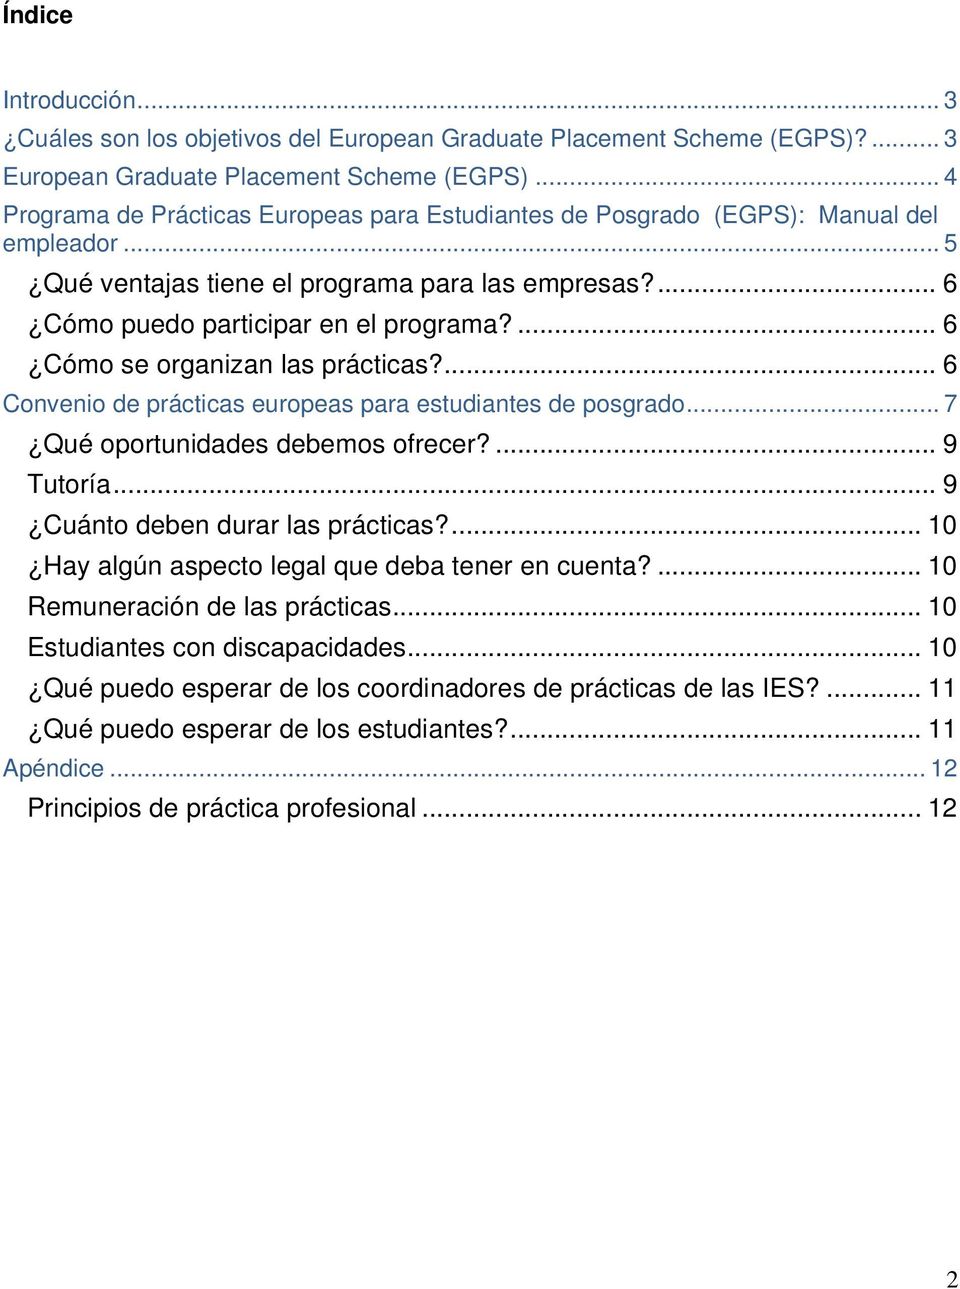 ... 6 Cómo se organizan las prácticas?... 6 Convenio de prácticas europeas para estudiantes de posgrado... 7 Qué oportunidades debemos ofrecer?... 9 Tutoría... 9 Cuánto deben durar las prácticas?